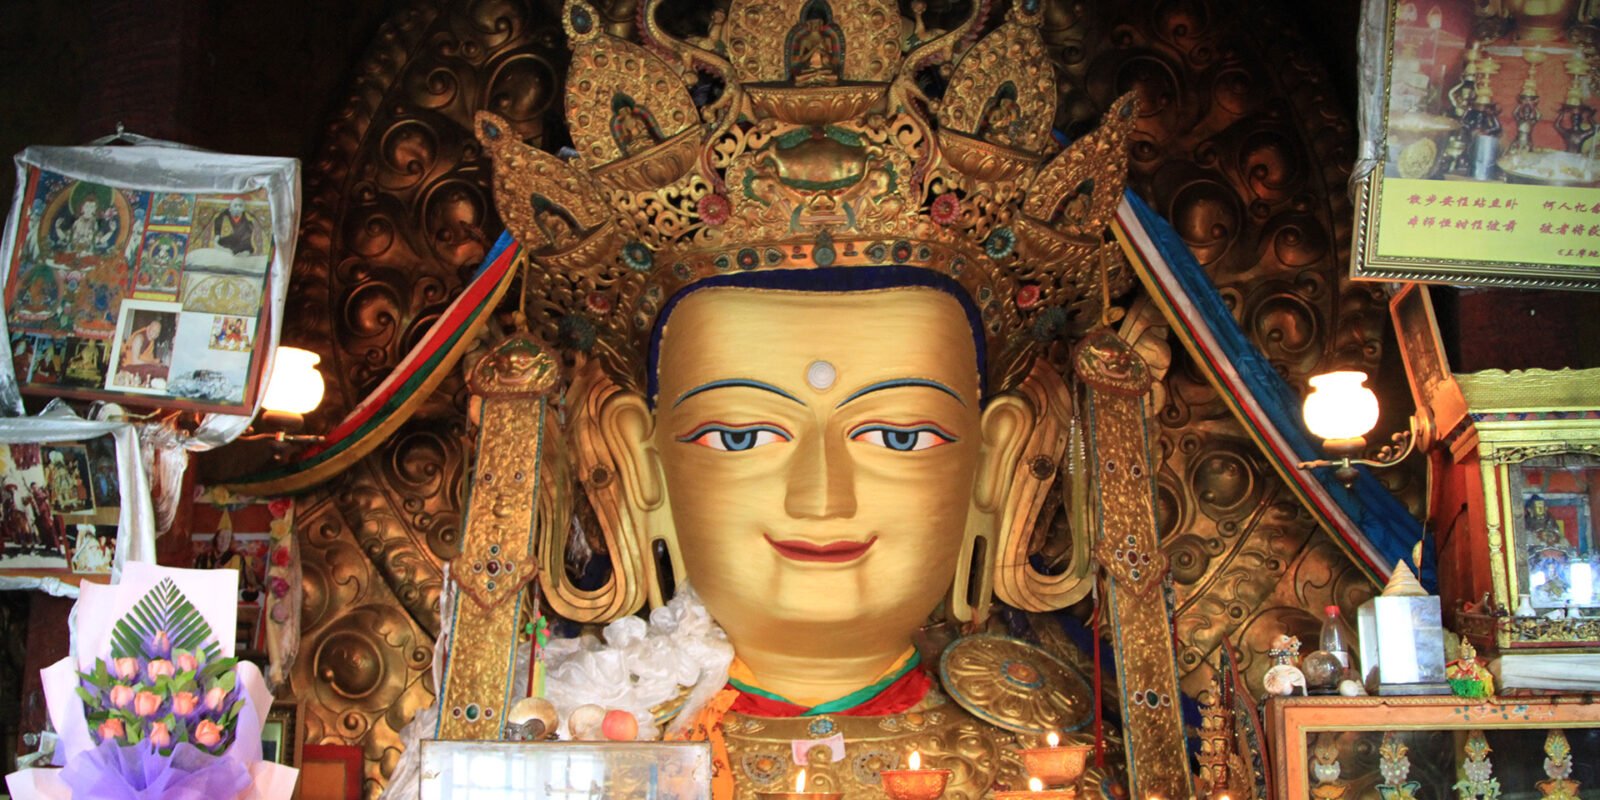 Tibet Jokhang Temple